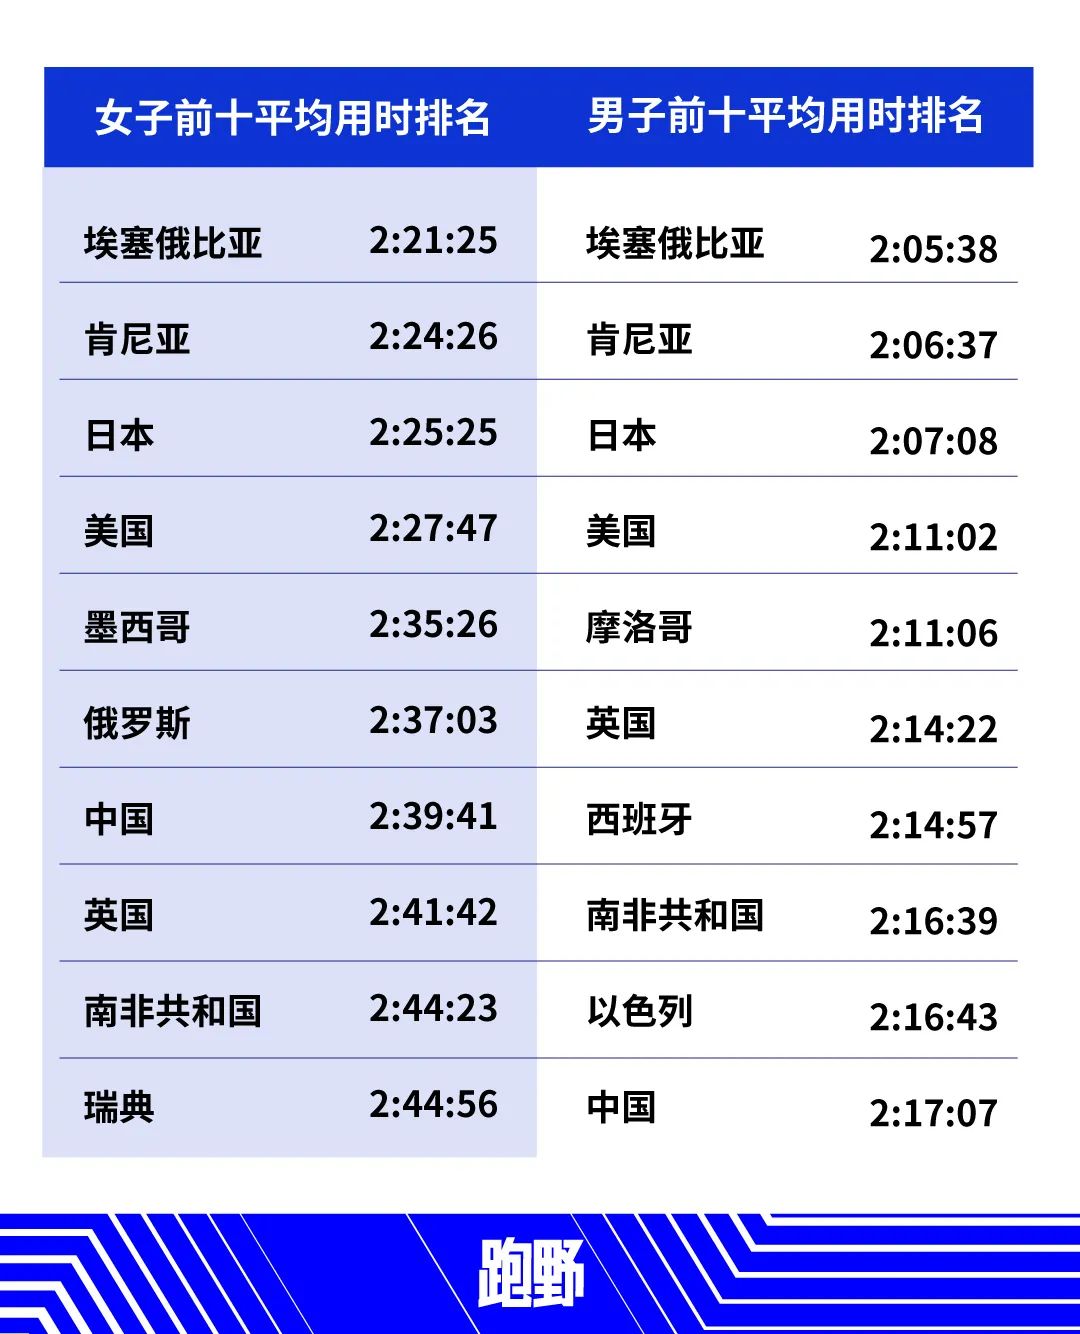 2020年马拉松成绩哪个国家最快 猜猜中国排在第几位